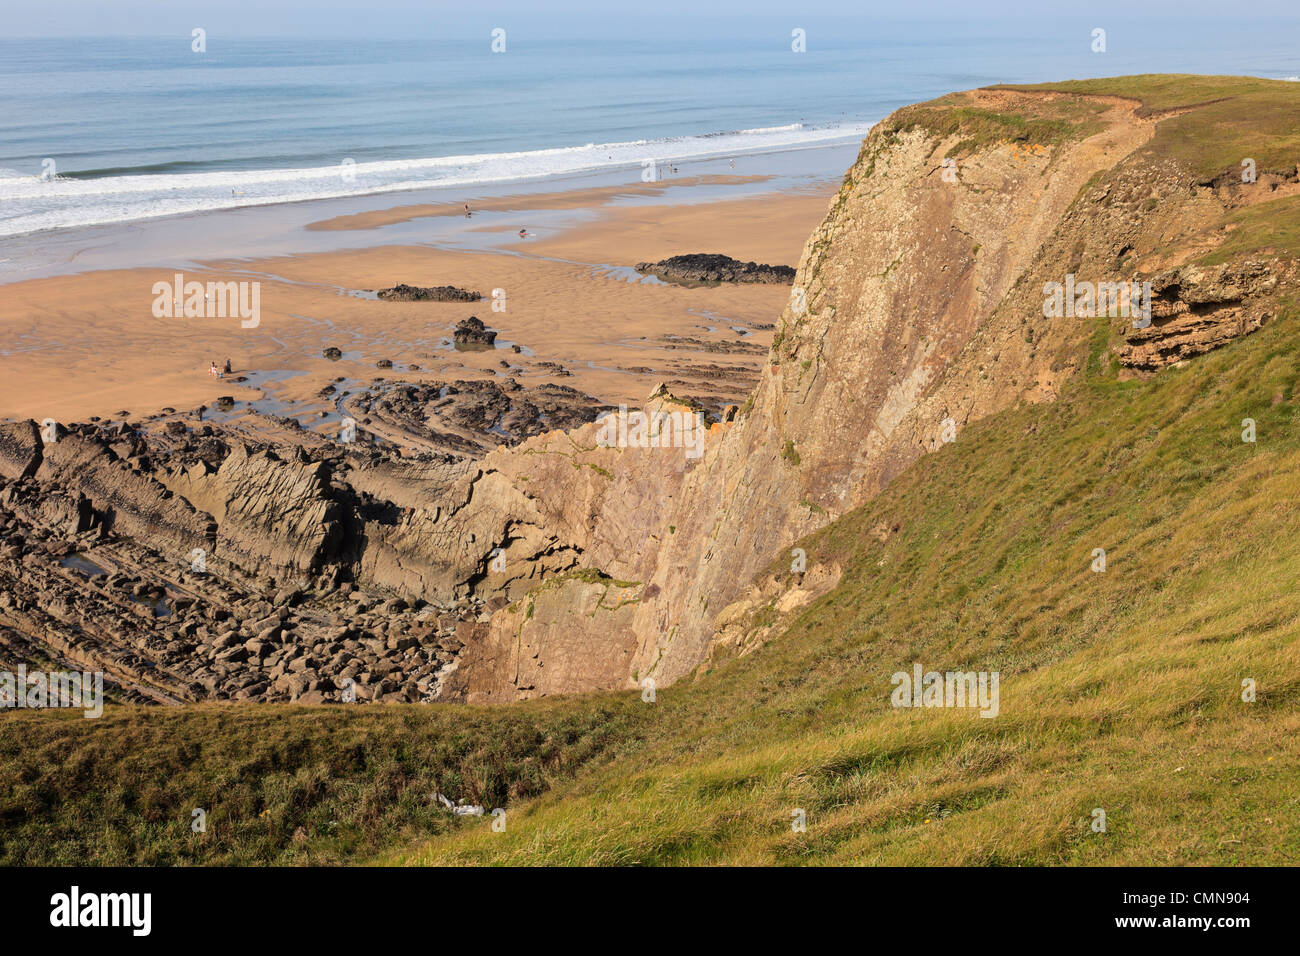 Lits de grès carbonifères vertical au-dessus des falaises de la plage sur la côte de Cornouailles à Bude Bay, North Cornwall, England, UK Banque D'Images